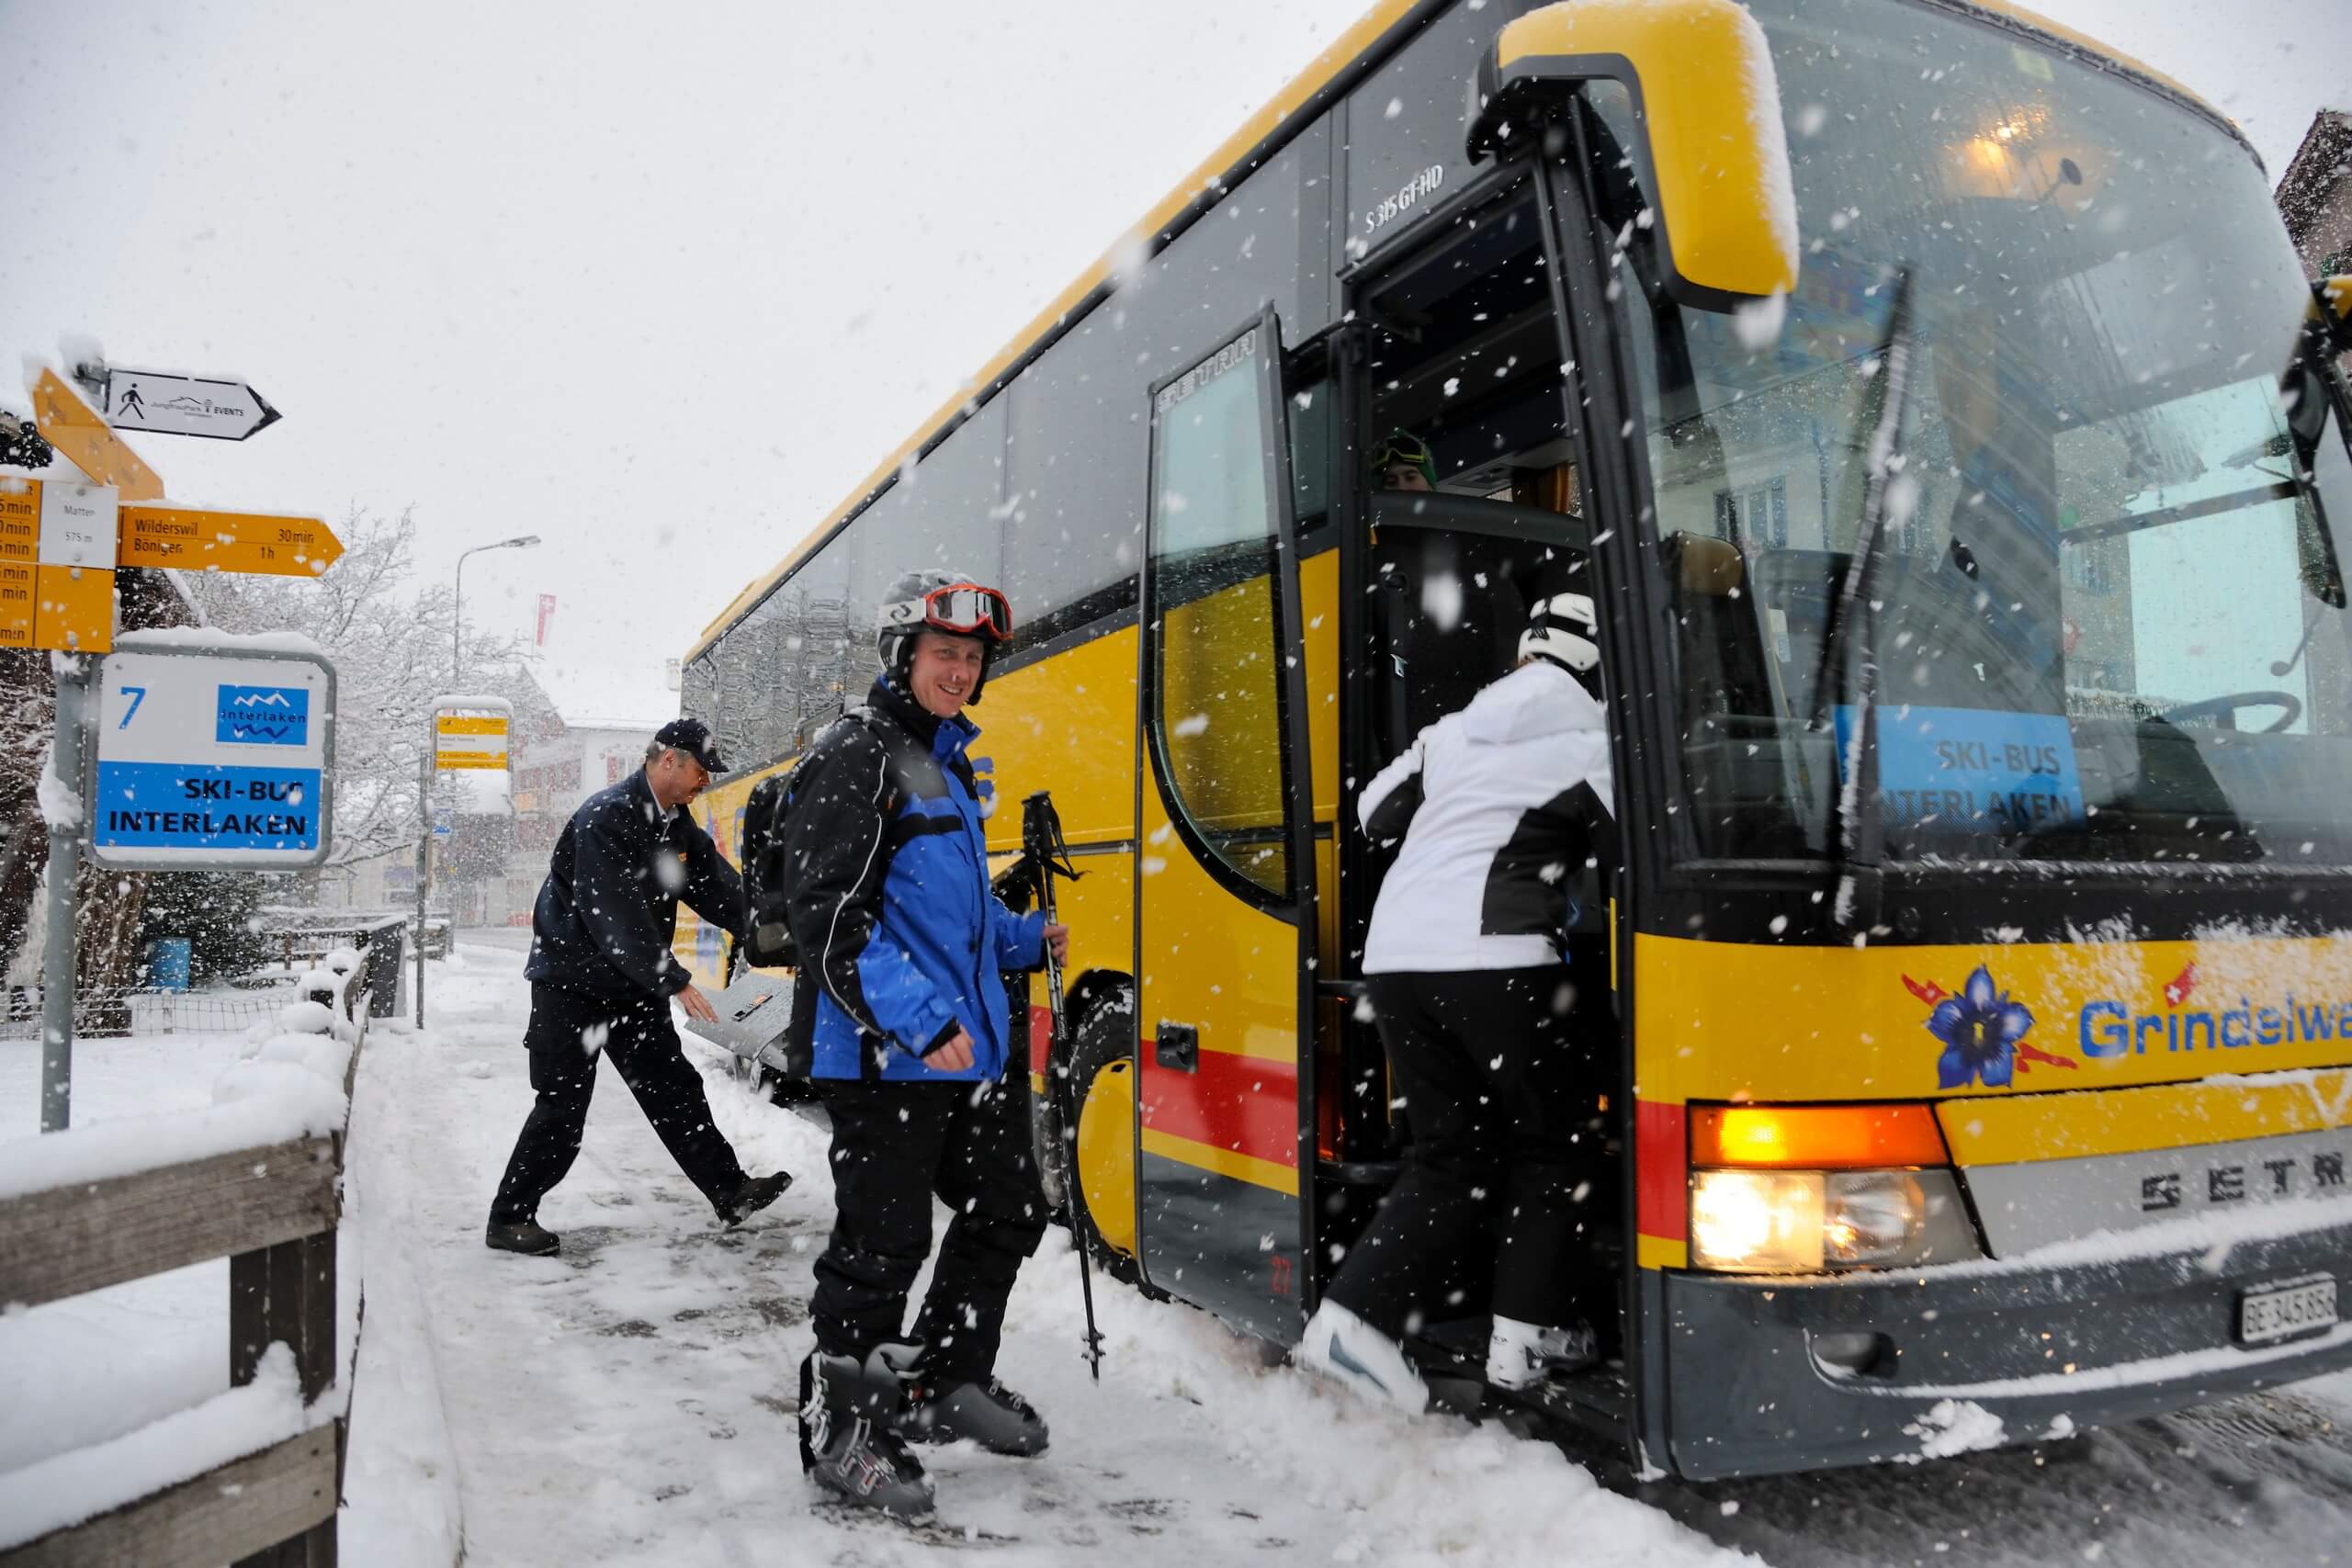 interlaken-skibus-winter-haltestelle-matten-einsteigen